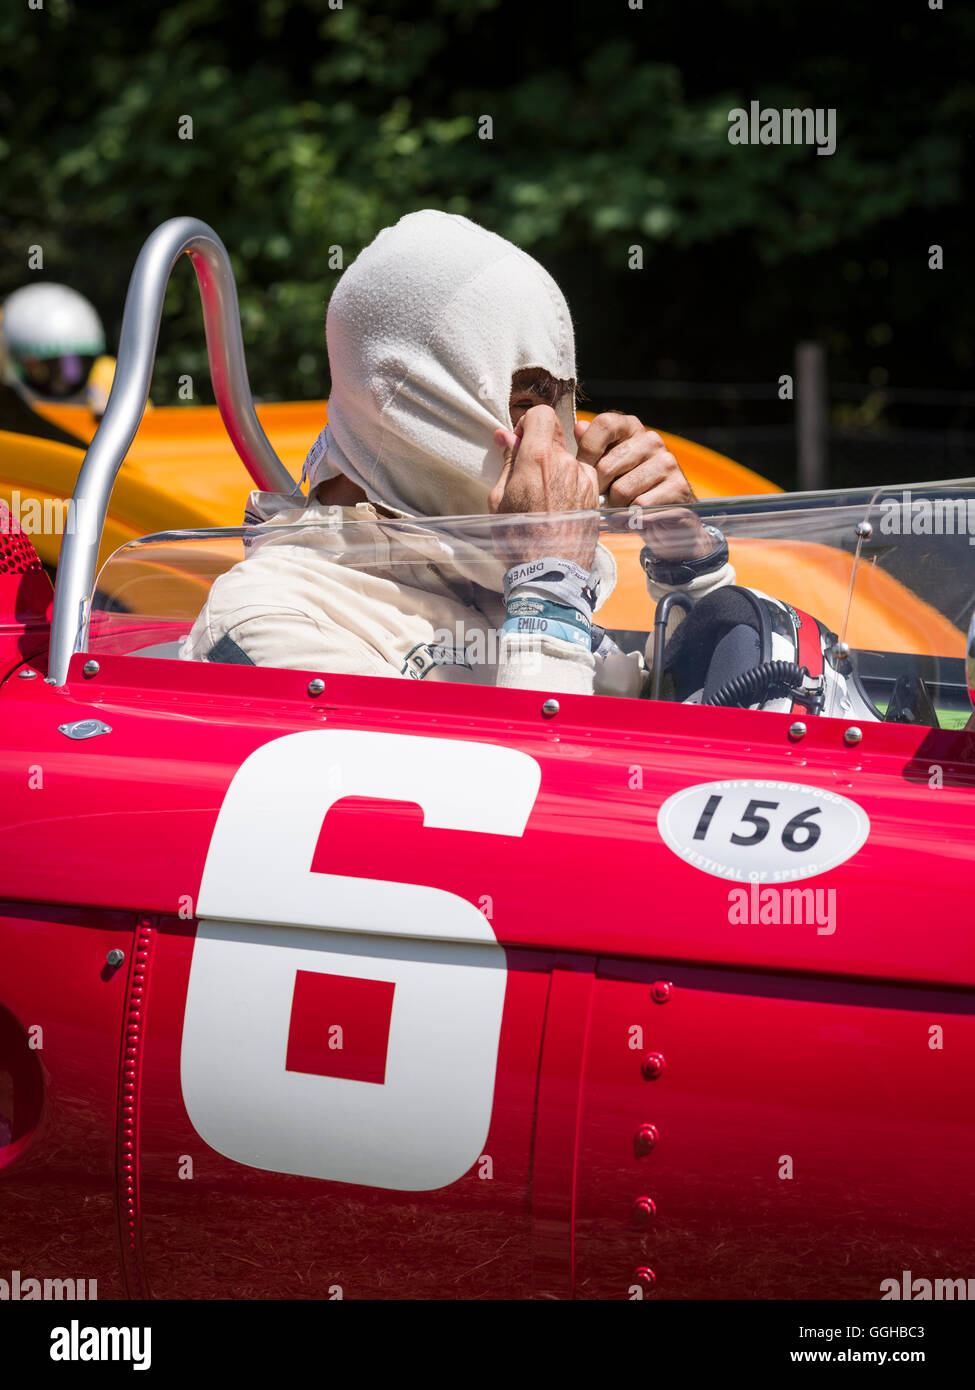 Emanuele Pirro, cinque volte vincitore di Le Mans, 1961 Ferrari 156 Sharknose, Goodwood Festival della velocità 2014, racing, auto racing, cl Foto Stock